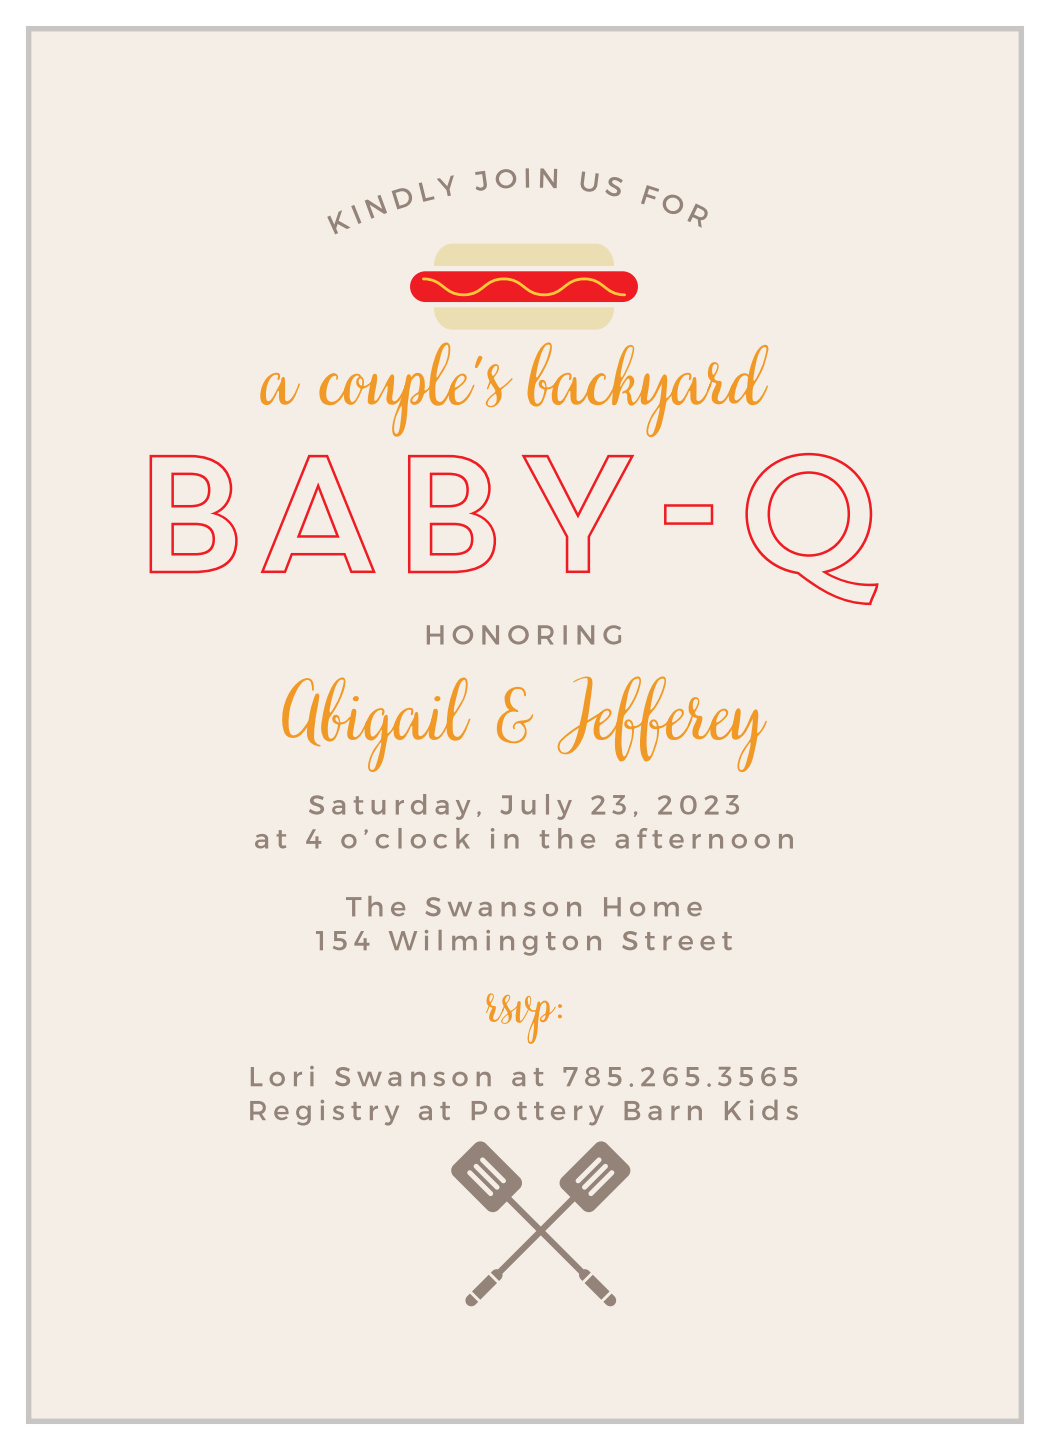 baby shower invitation honoring